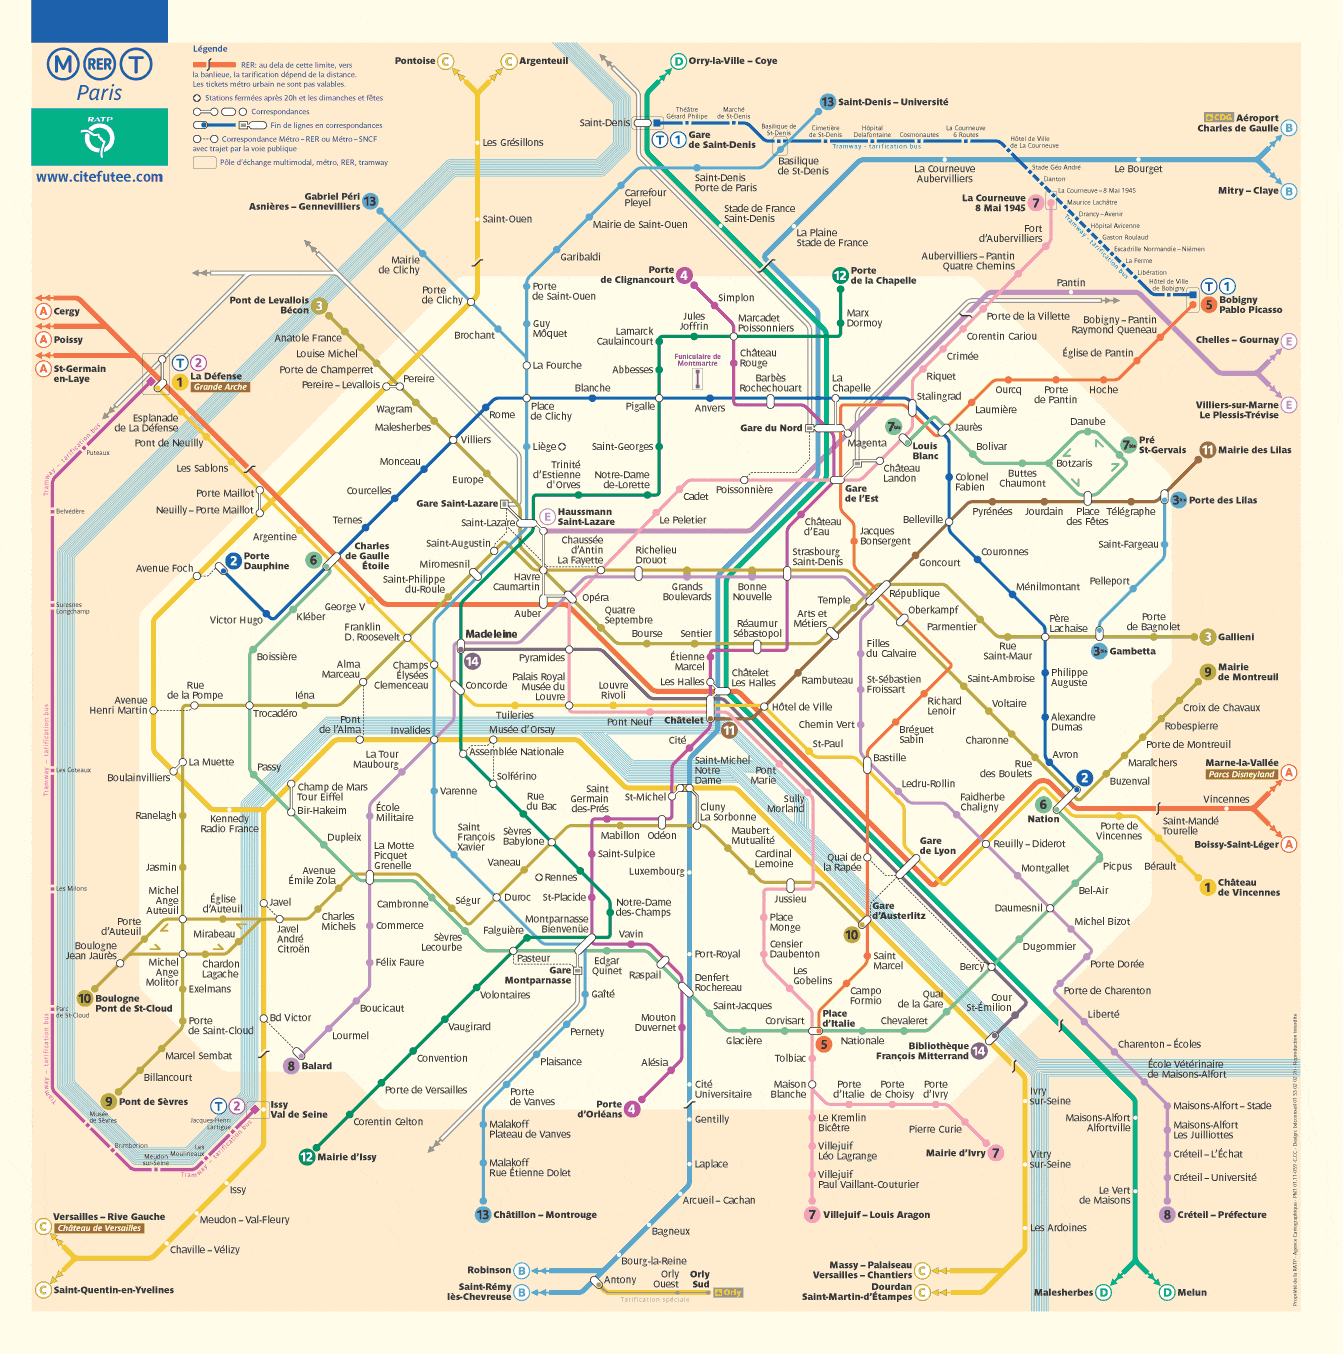 Le 5 Zone Tariffarie Di Parigi Mappa Metro E Rer